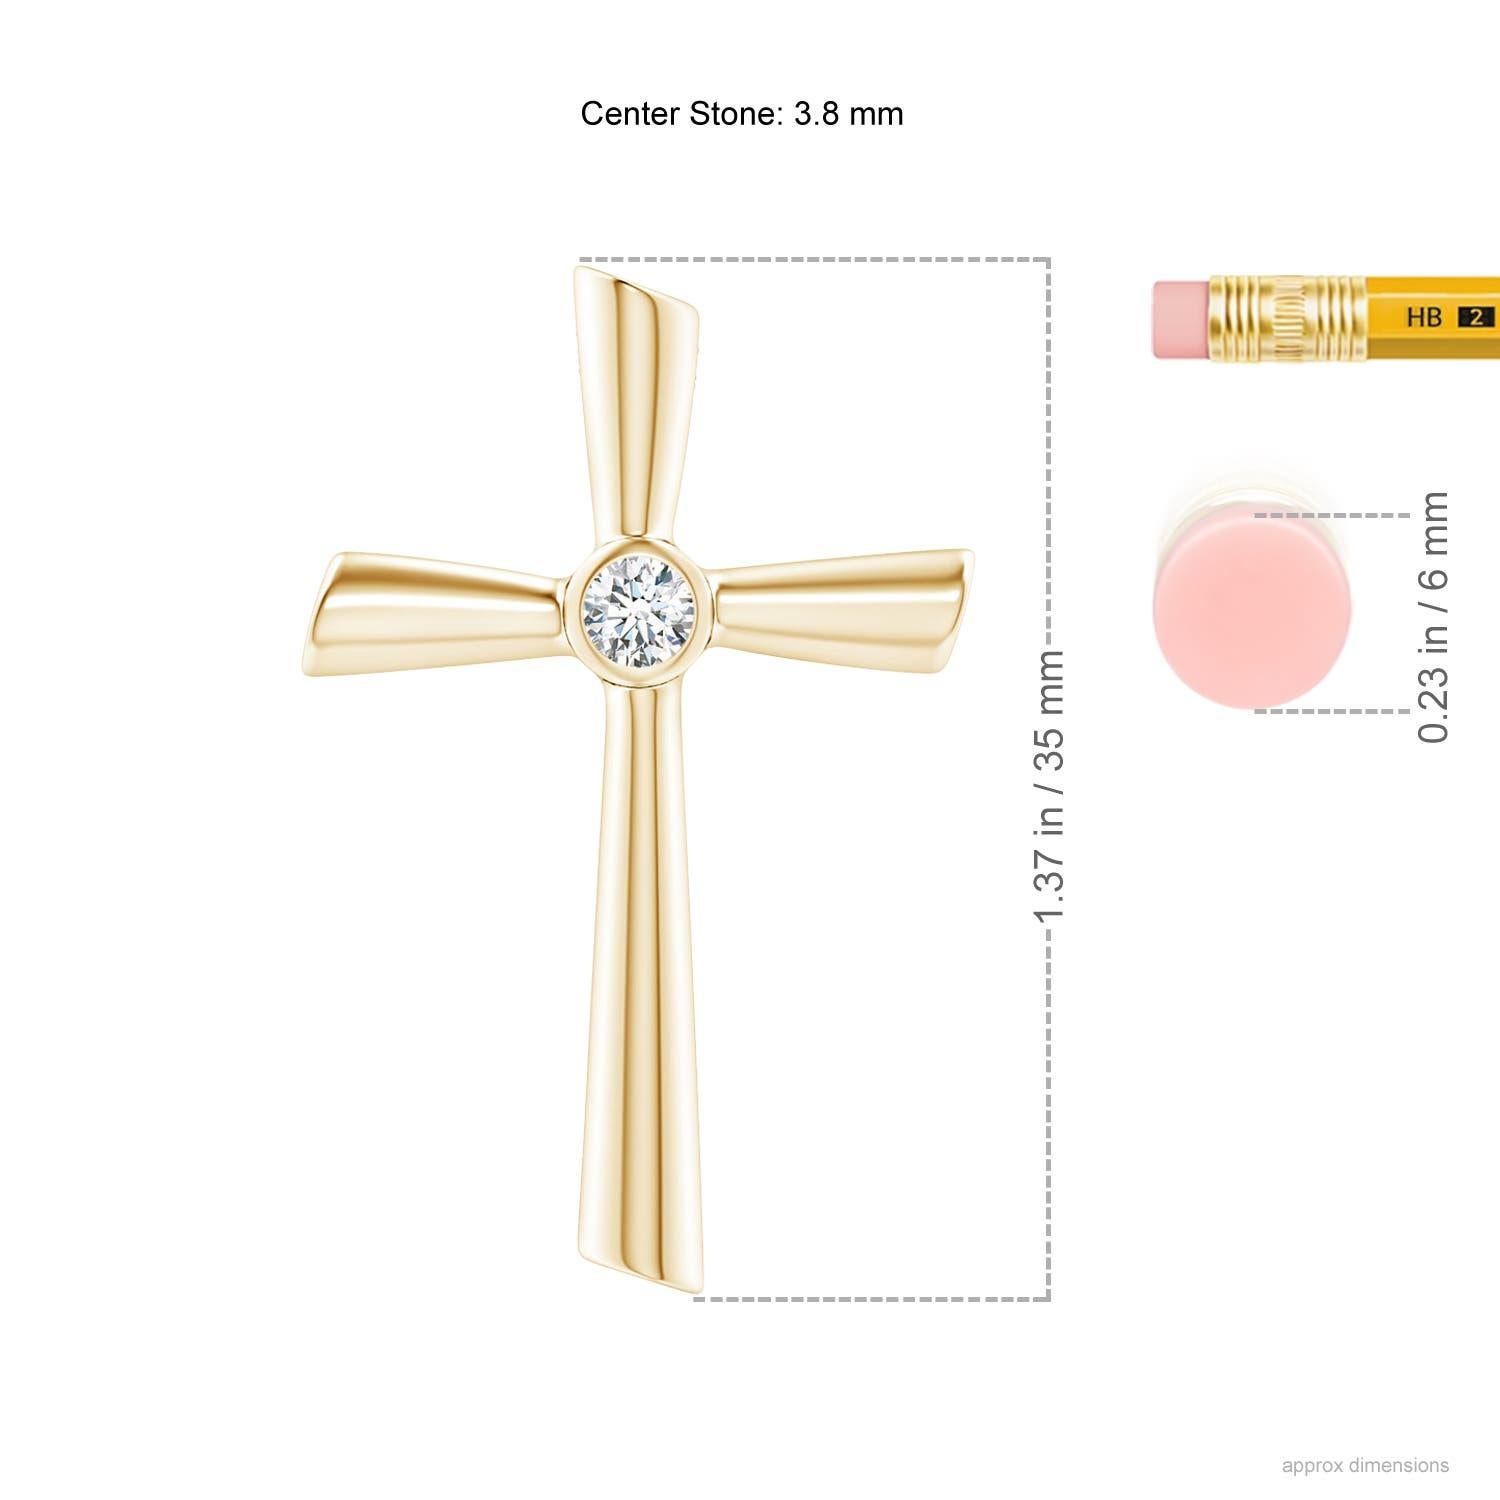 Conçu en or jaune 14k, ce pendentif crucifix en diamant est orné d'un diamant solitaire scintillant en son centre. Les rainures ont une allure réfléchissante qui complète la brillance du diamant rond.
Le diamant est la pierre de naissance du mois